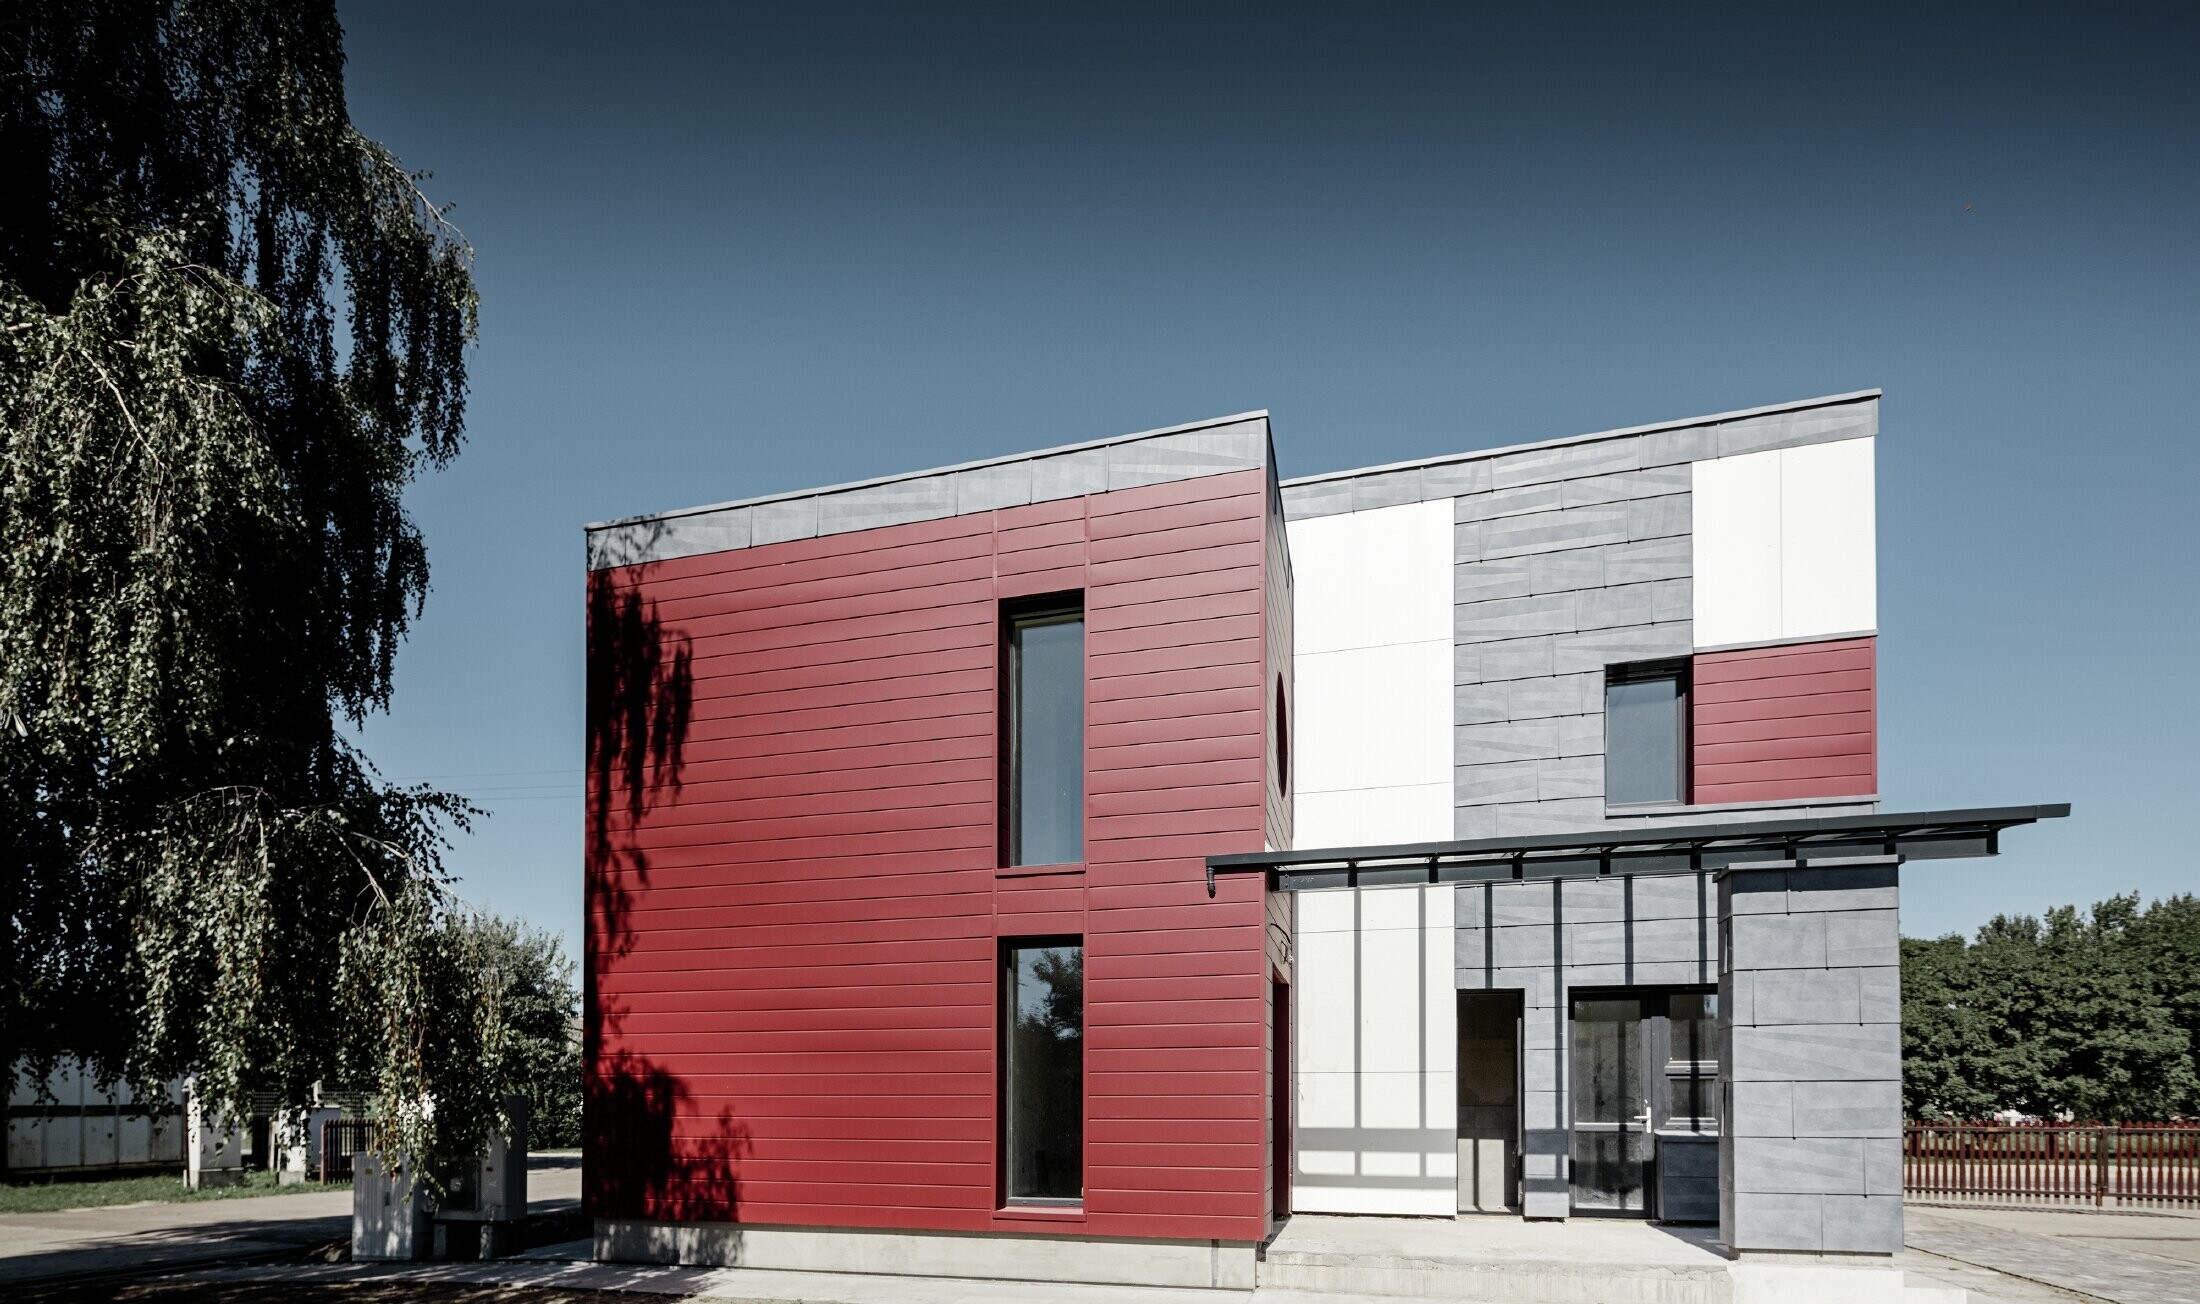 Moderná kancelárska budova s delenou hliníkovou fasádou vytvorenou z PREFA Siding v červenej, kamennošedej a bielej farbe, z PREFA fasádneho panelu FX.12 a z PREFA hliníkového kompozitného panela